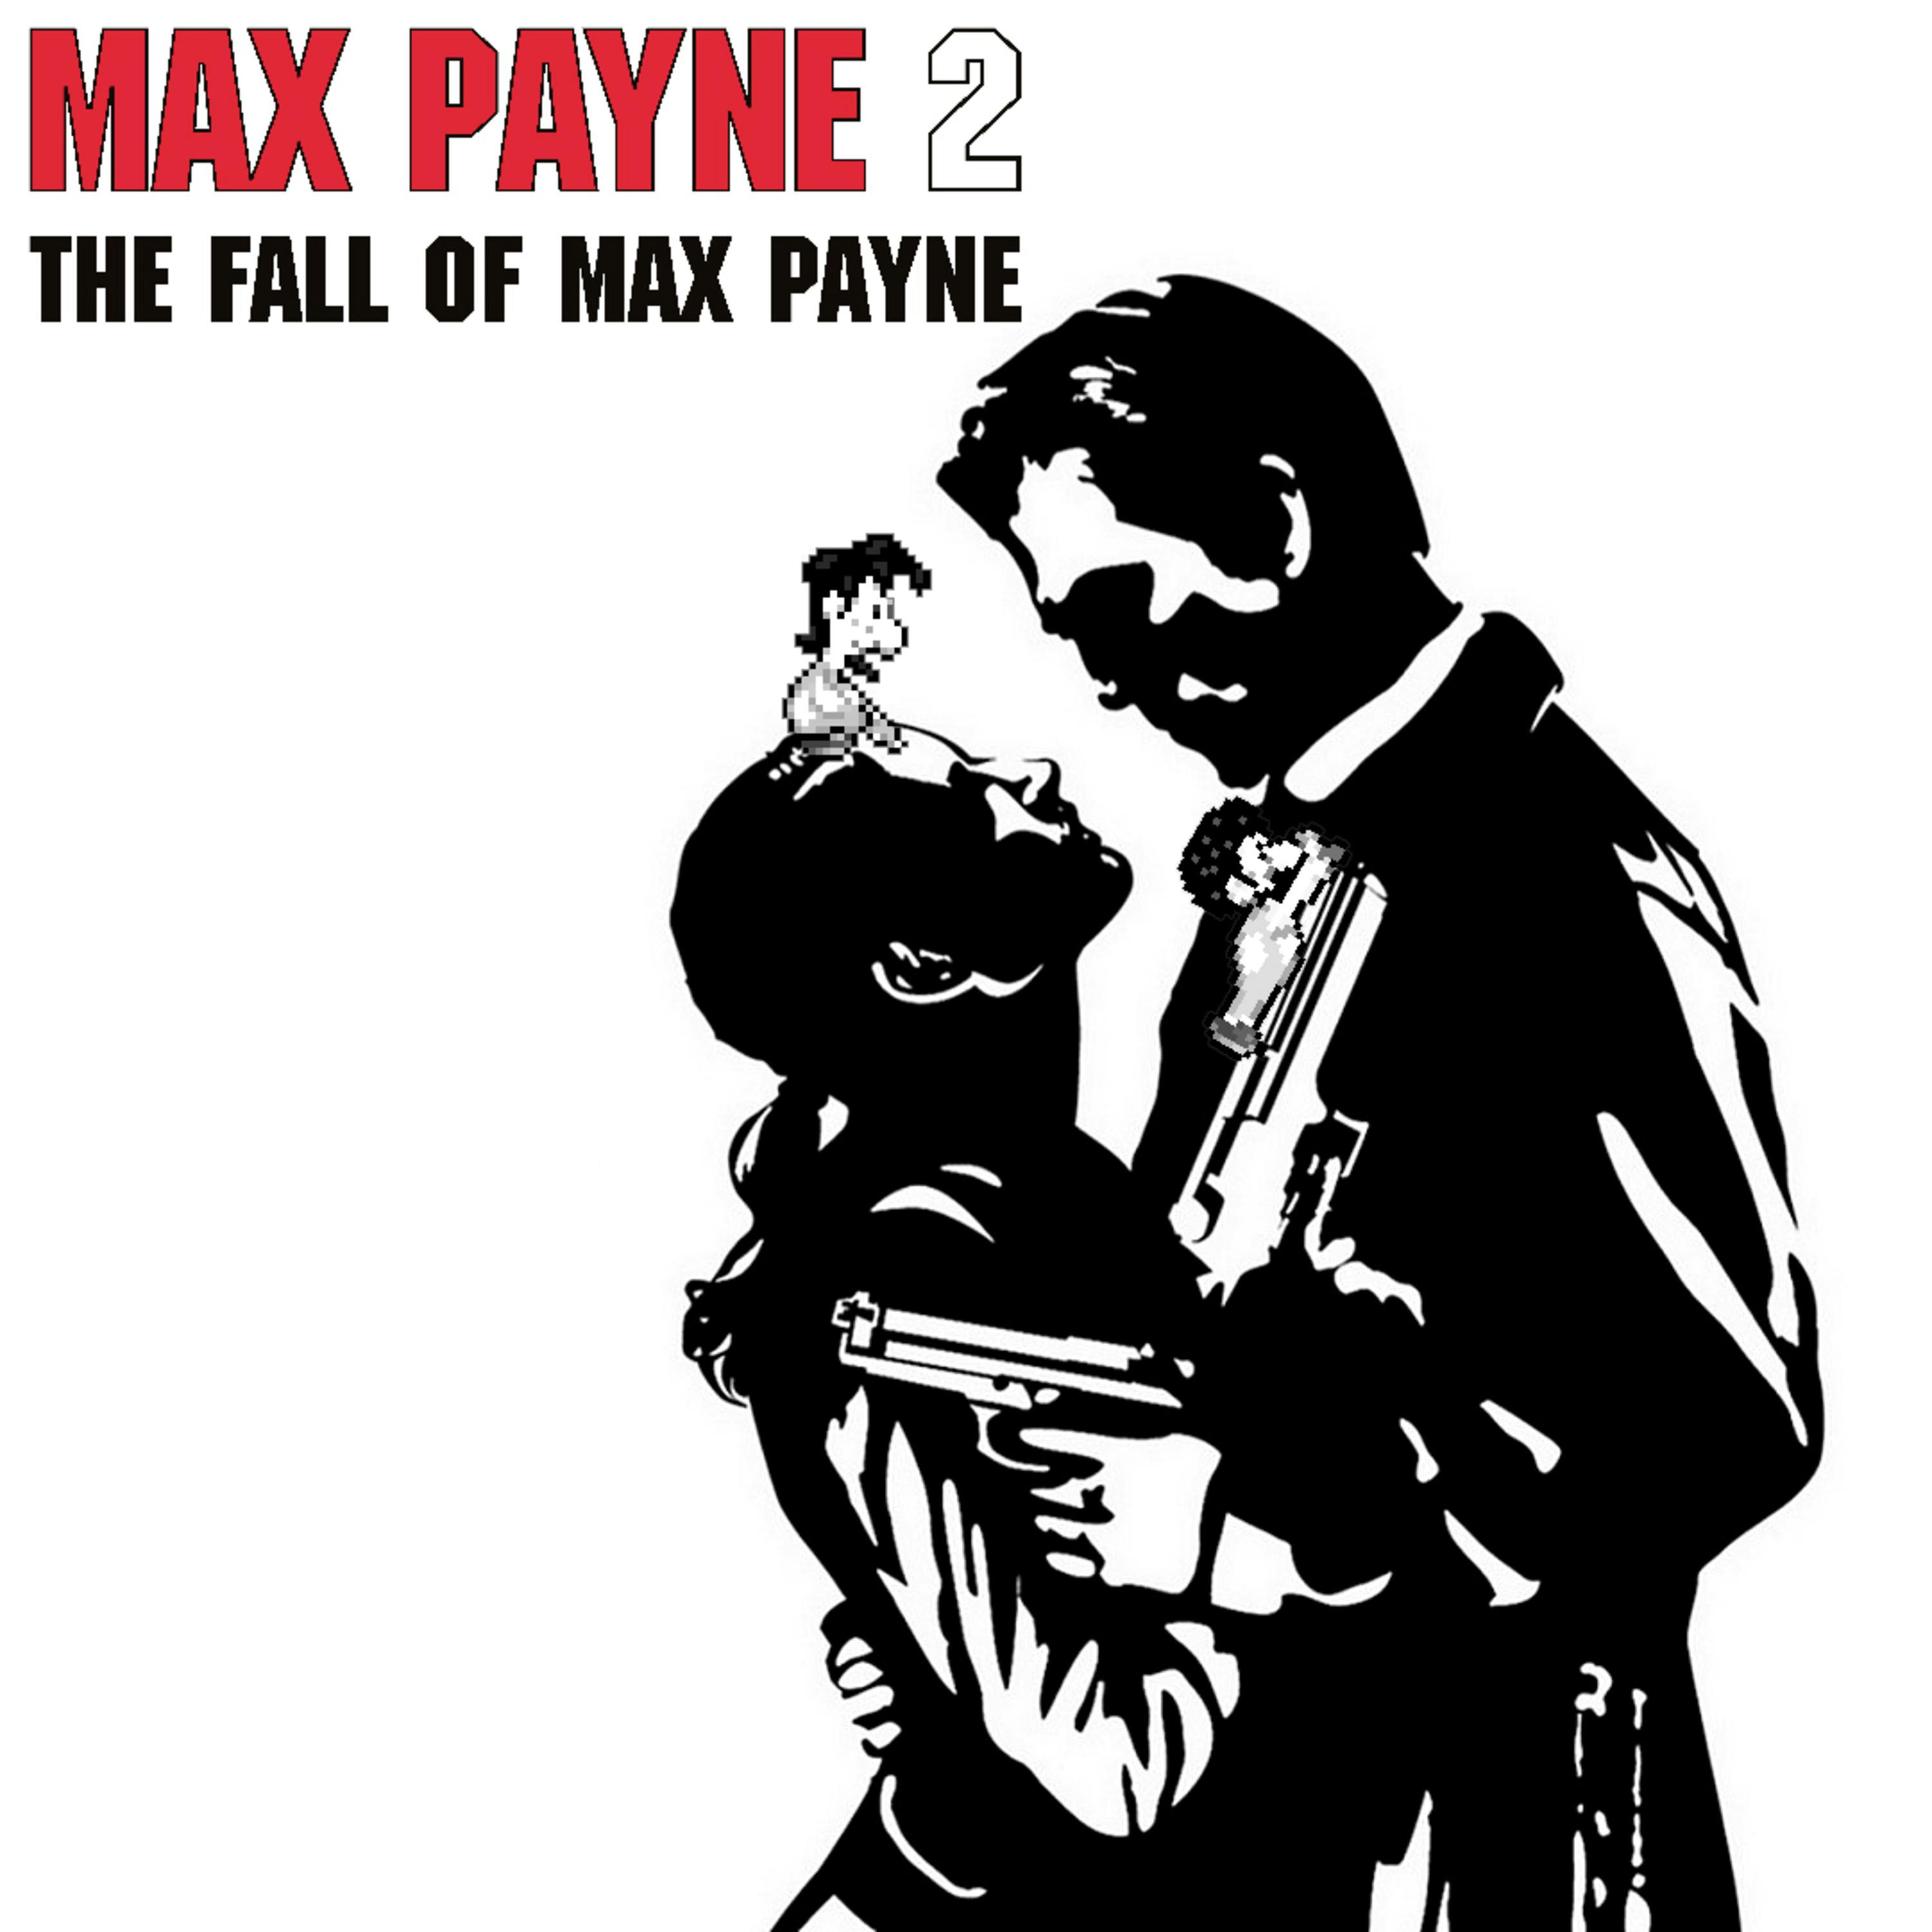 089 - Max Payne 2